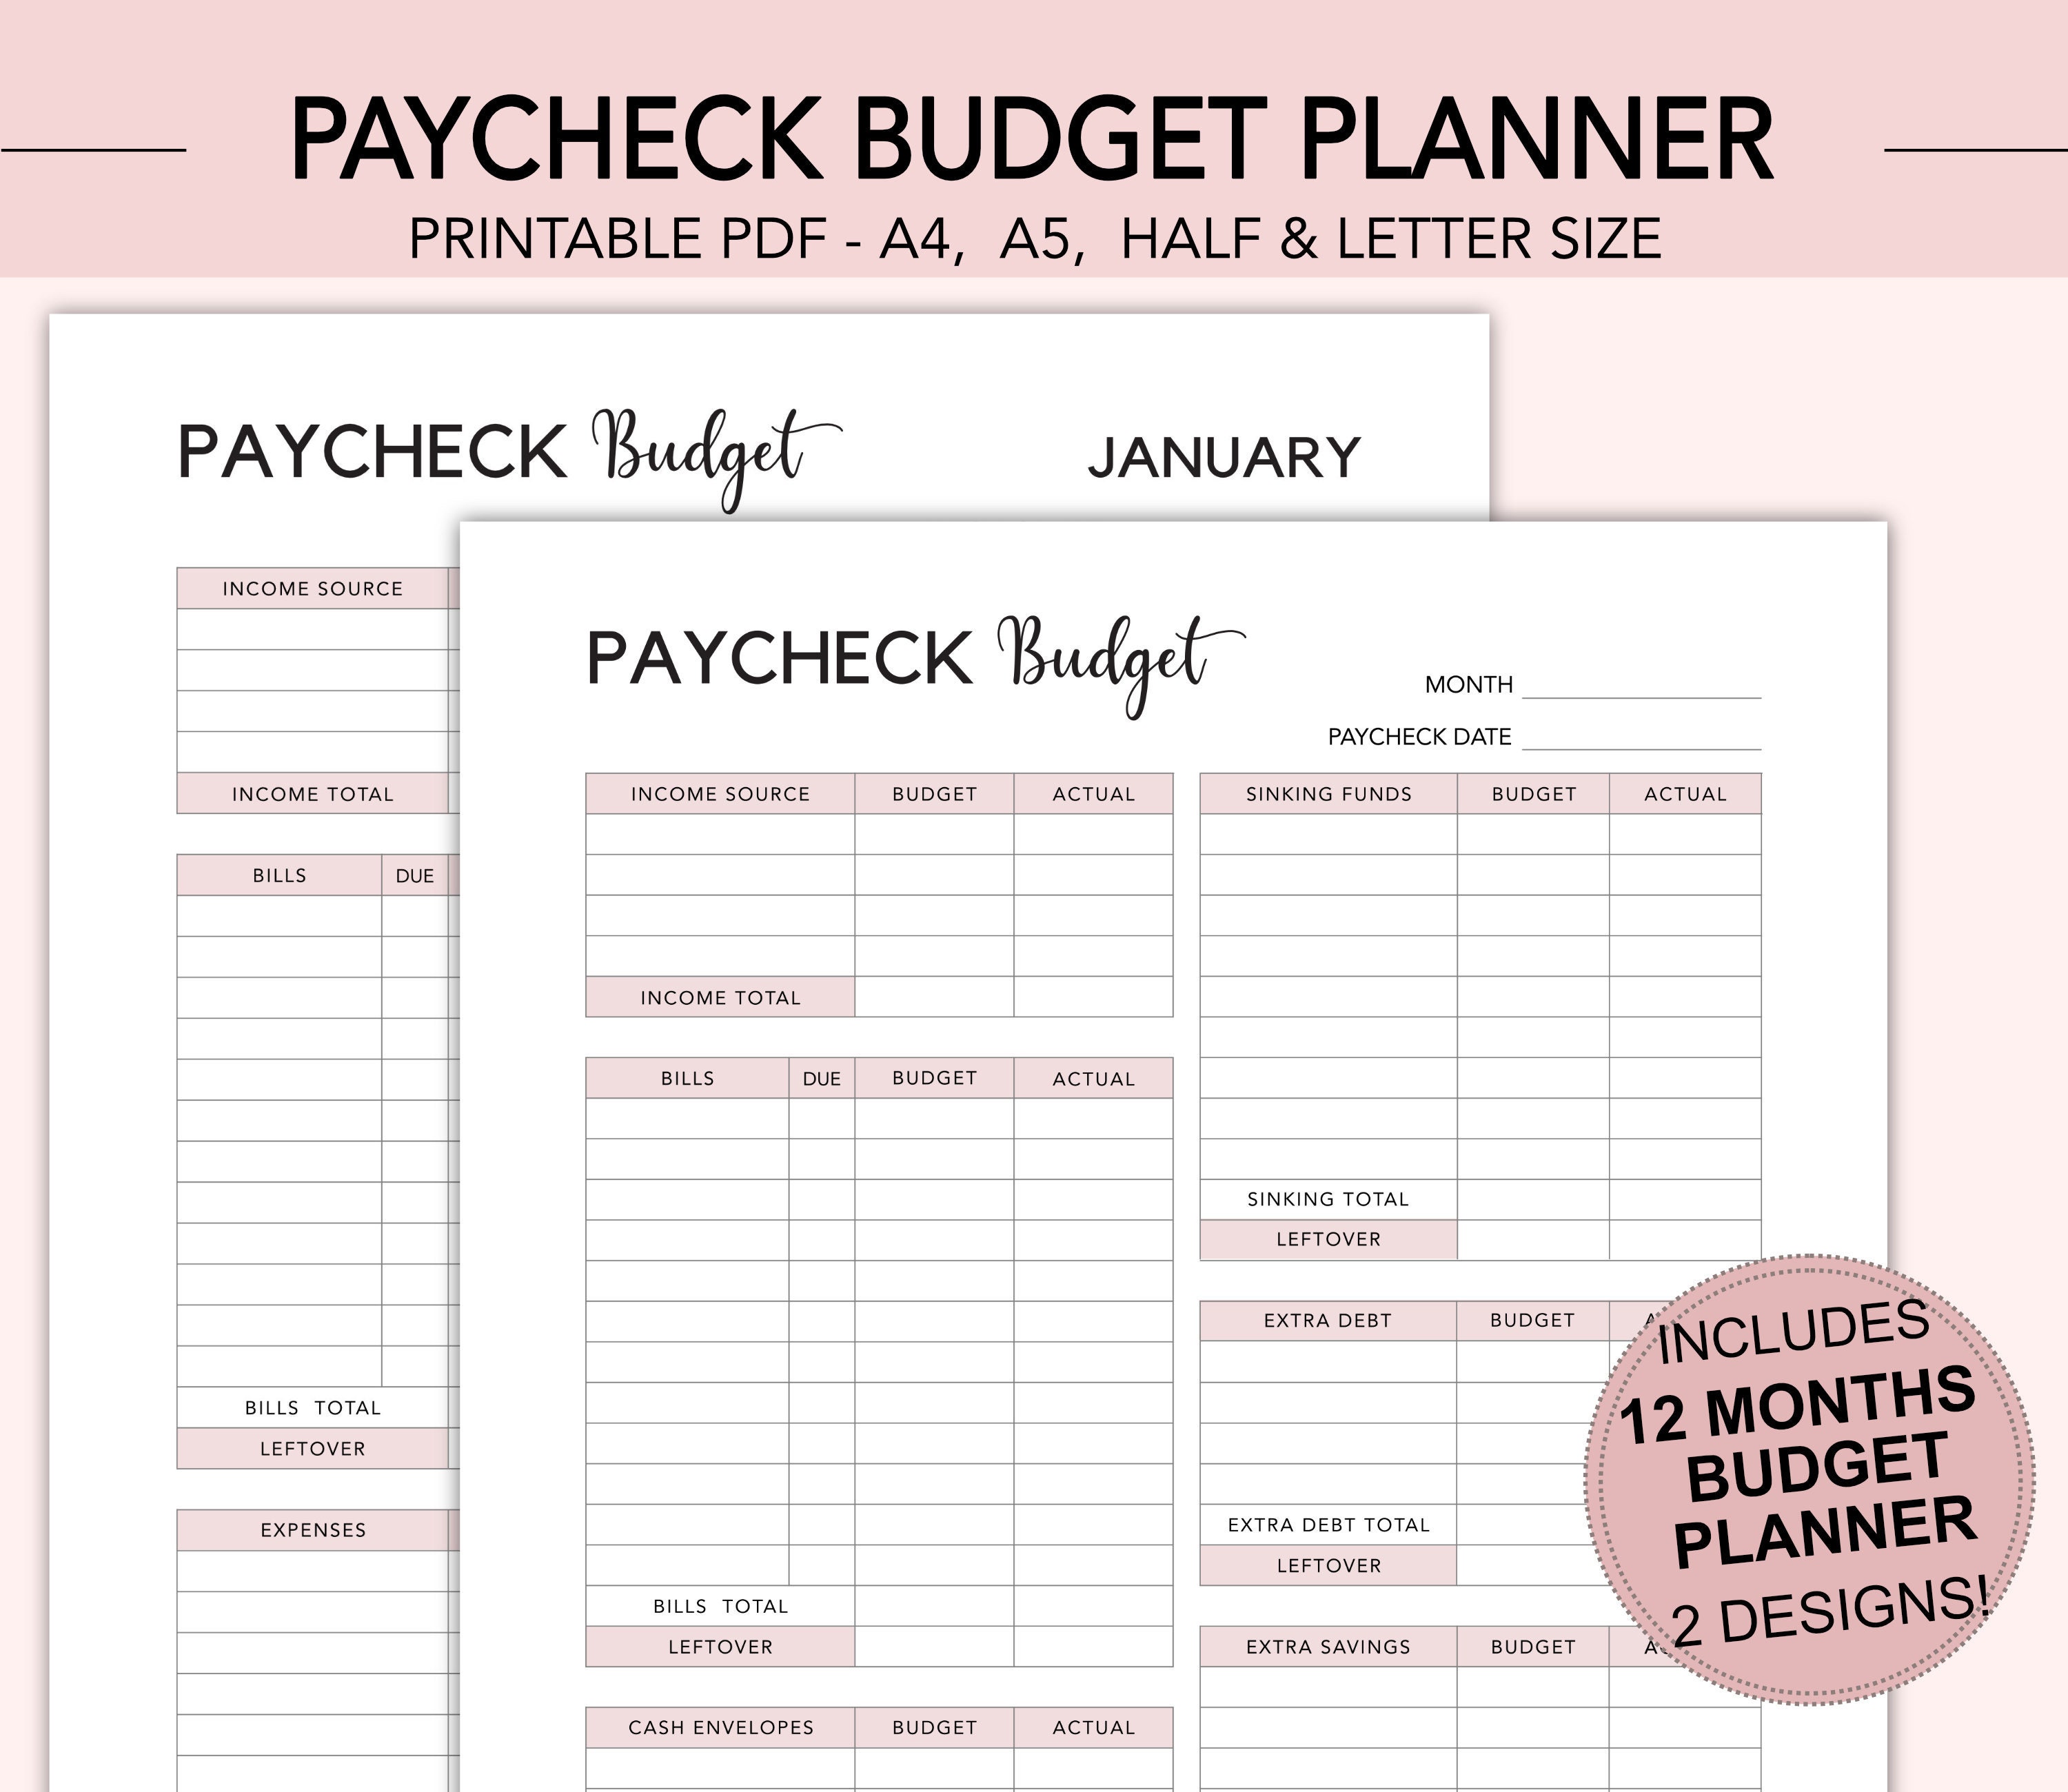 paycheck-budget-planner-paycheck-budget-planner-paycheck-etsy